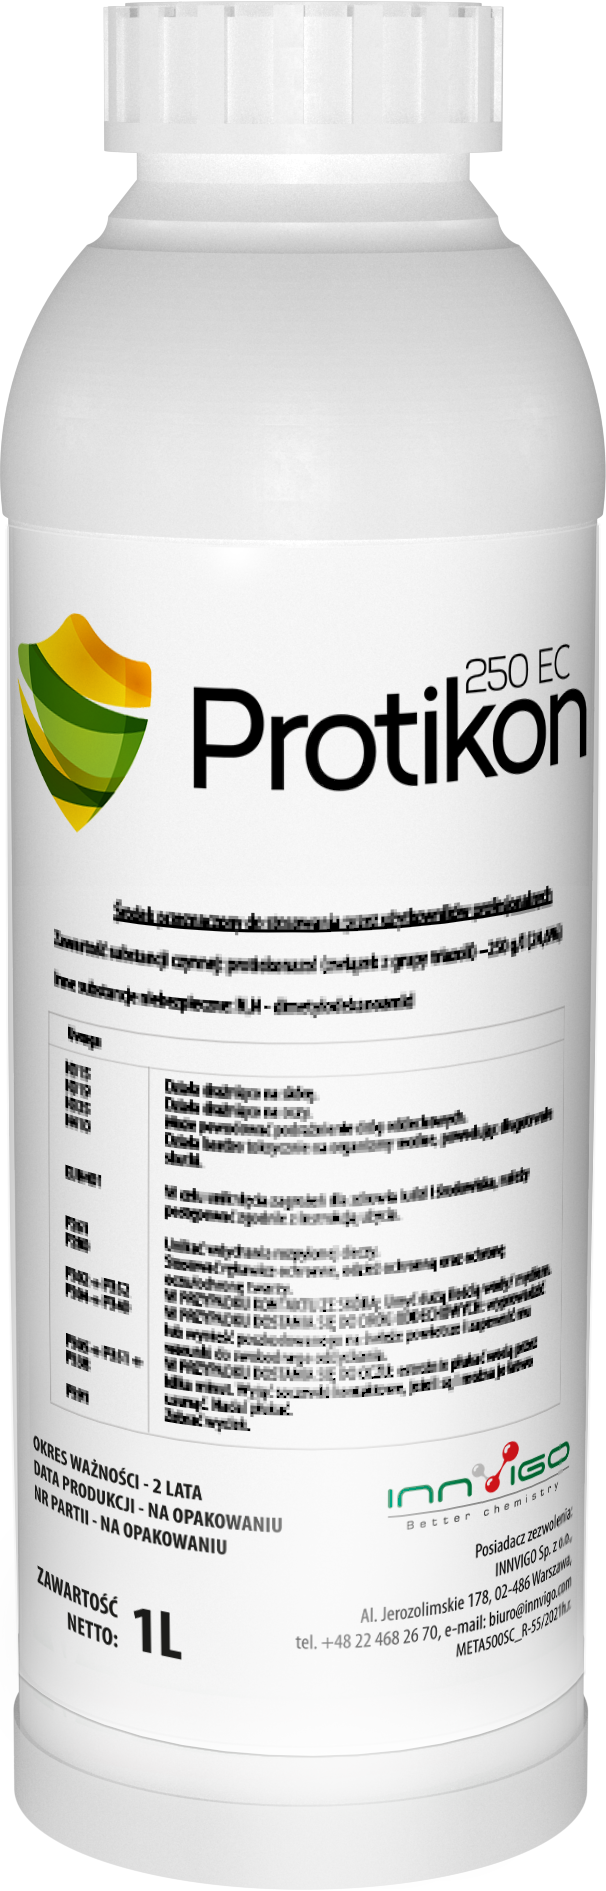 Fungicyd Protikon - Oprysk na grzyba w rzepaku